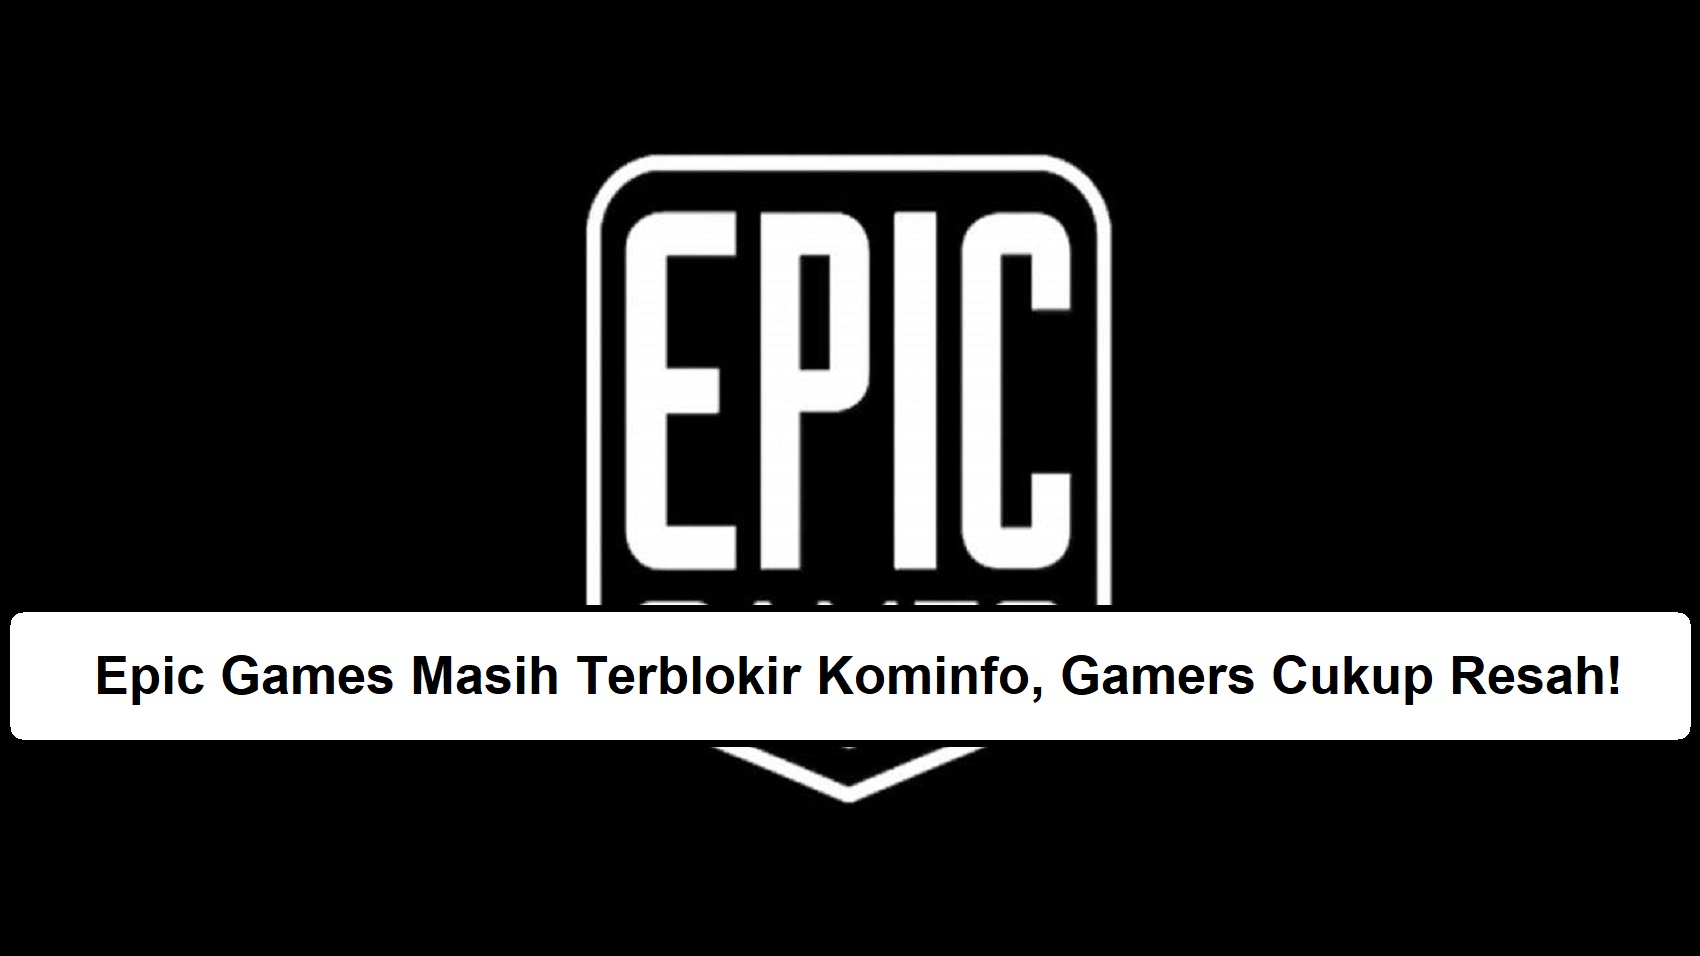 Epic Games Masih Terblokir Kominfo, Gamers Cukup Resah!